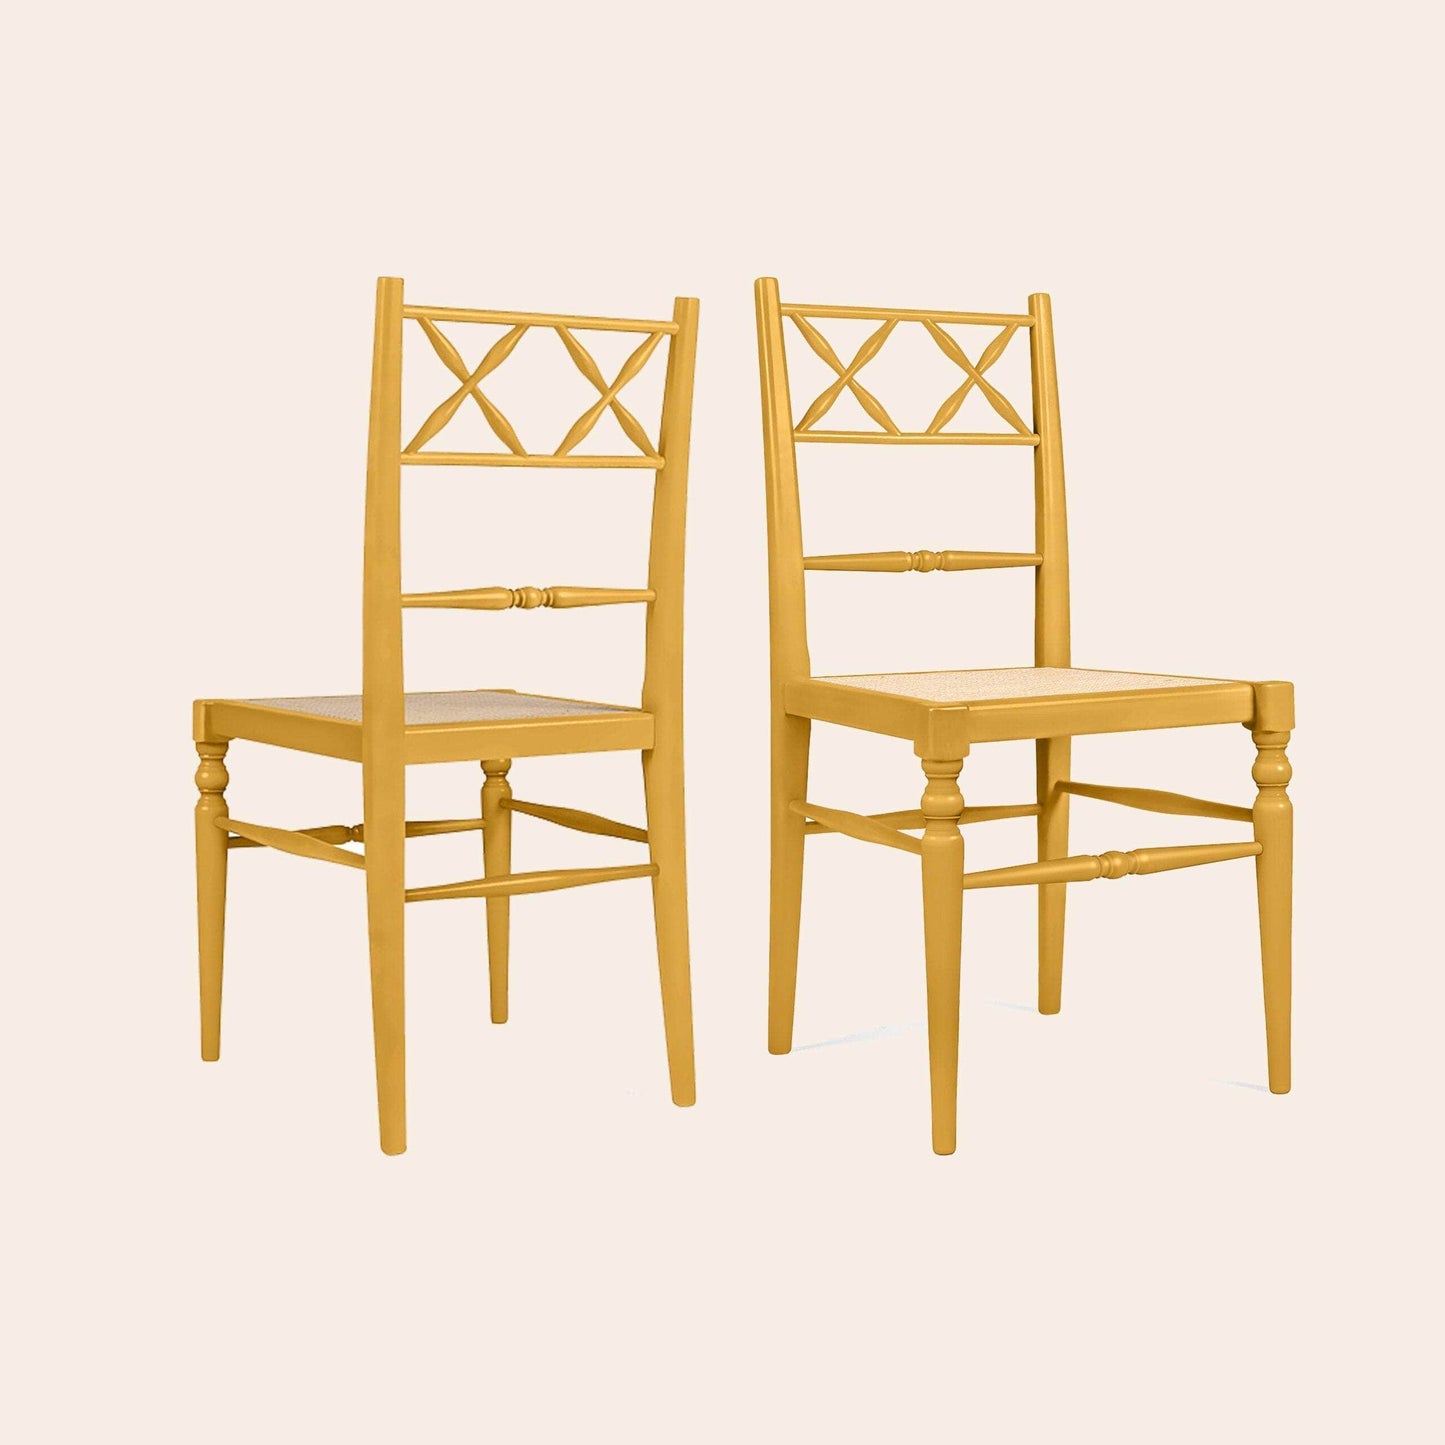 Pair of Chiara Dining Chairs, Mustard